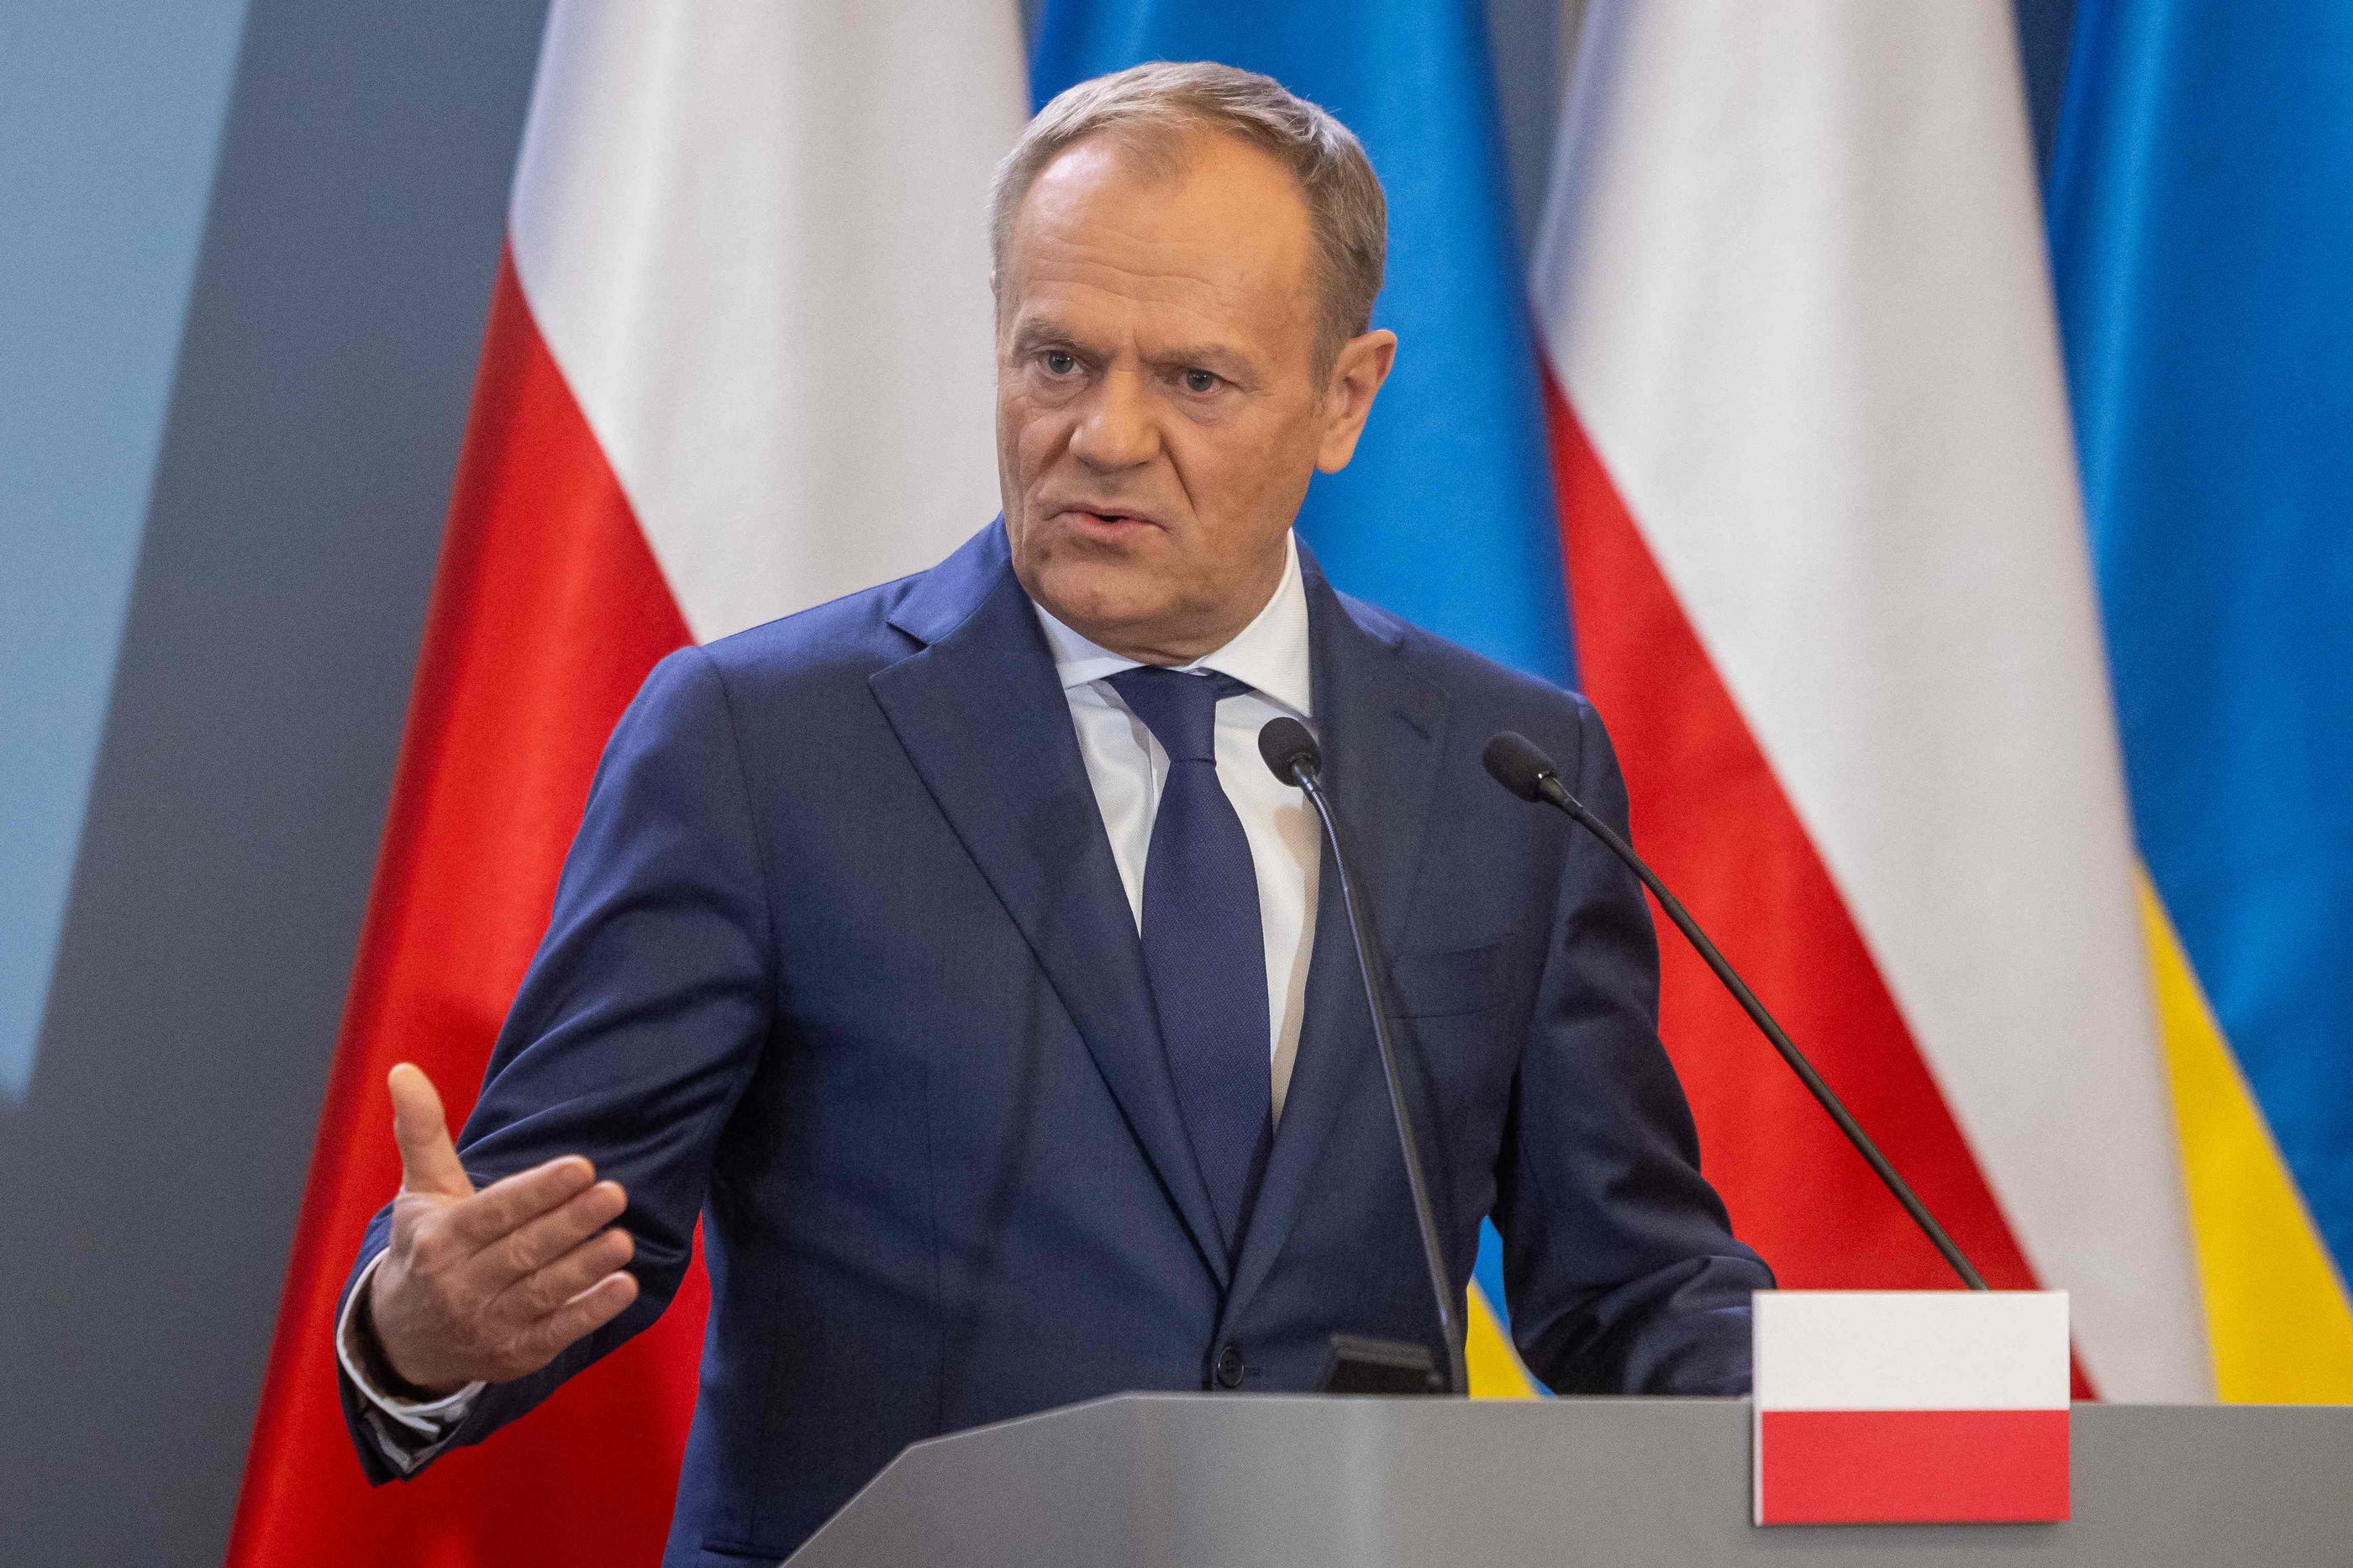 Le Premier ministre Donald Tusk a annoncé l'interpellation de neuf personnes, de nationalités différentes, suspectées d'être impliquées dans des actes de sabotage pour le compte de la Russie. AFP / Wojtek Radwanski